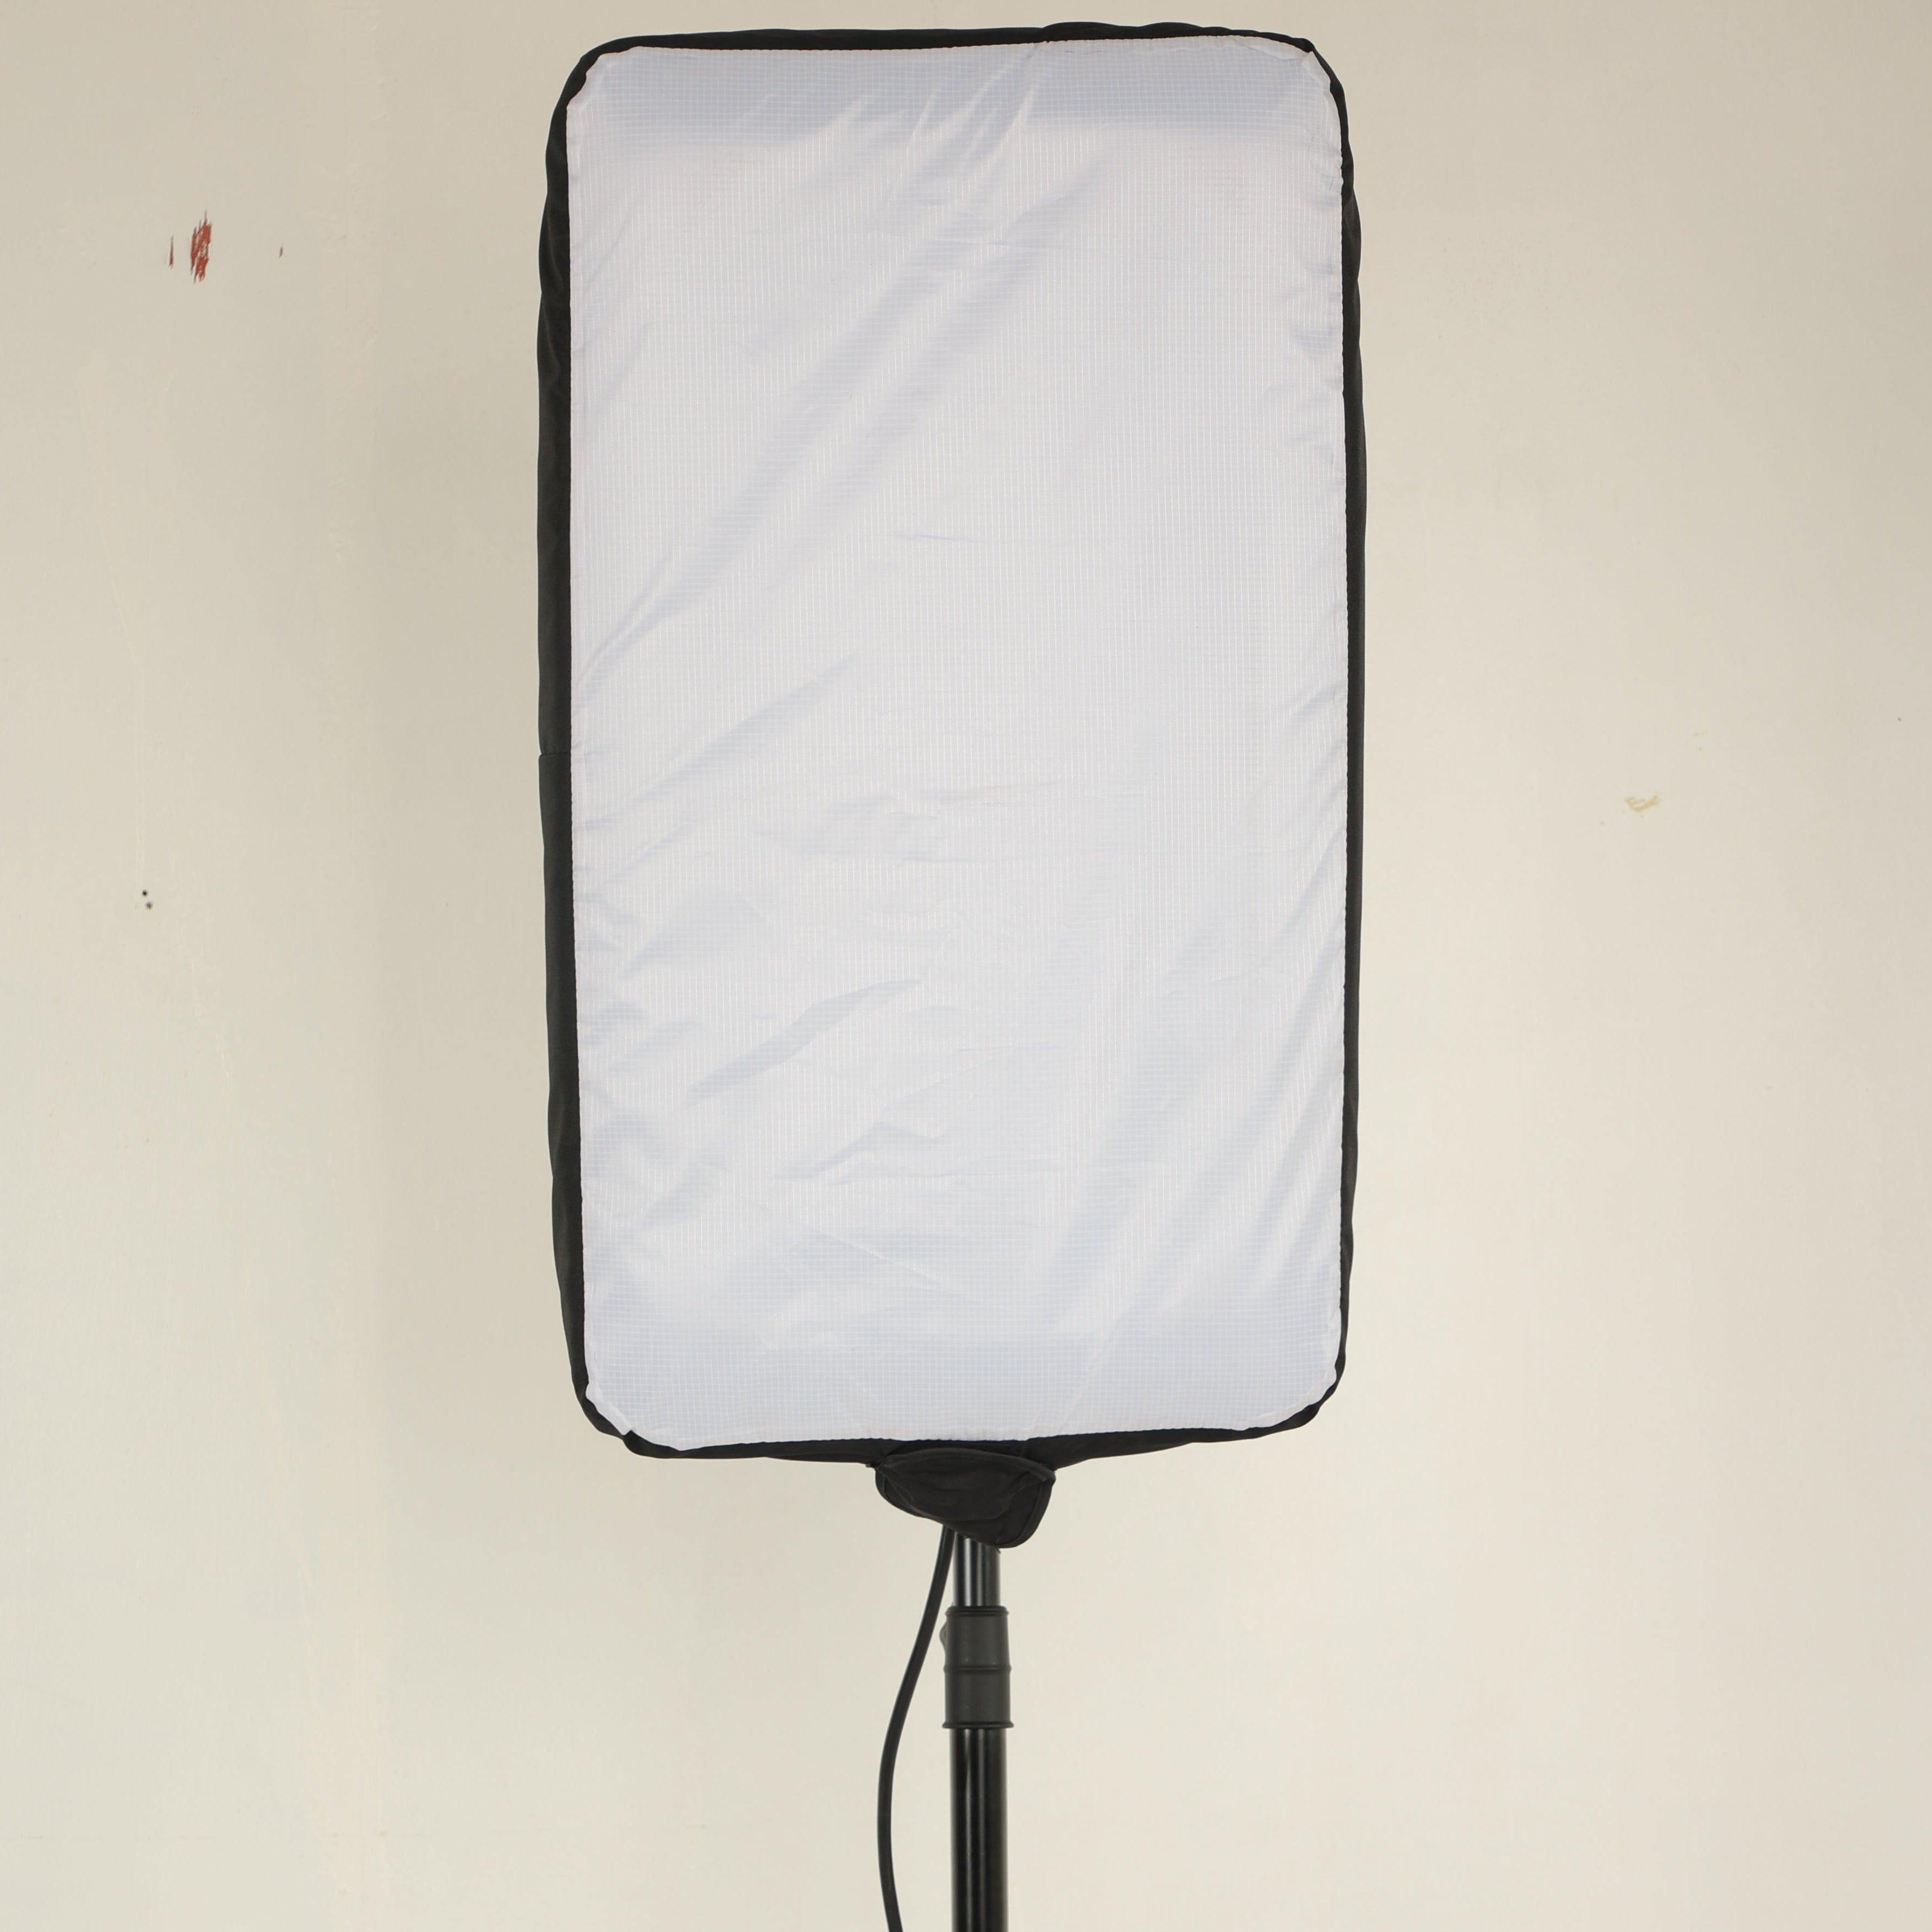 Plafonnier LED 12 Vdc à plaquer rectangulaire12 Vdc - Vignal